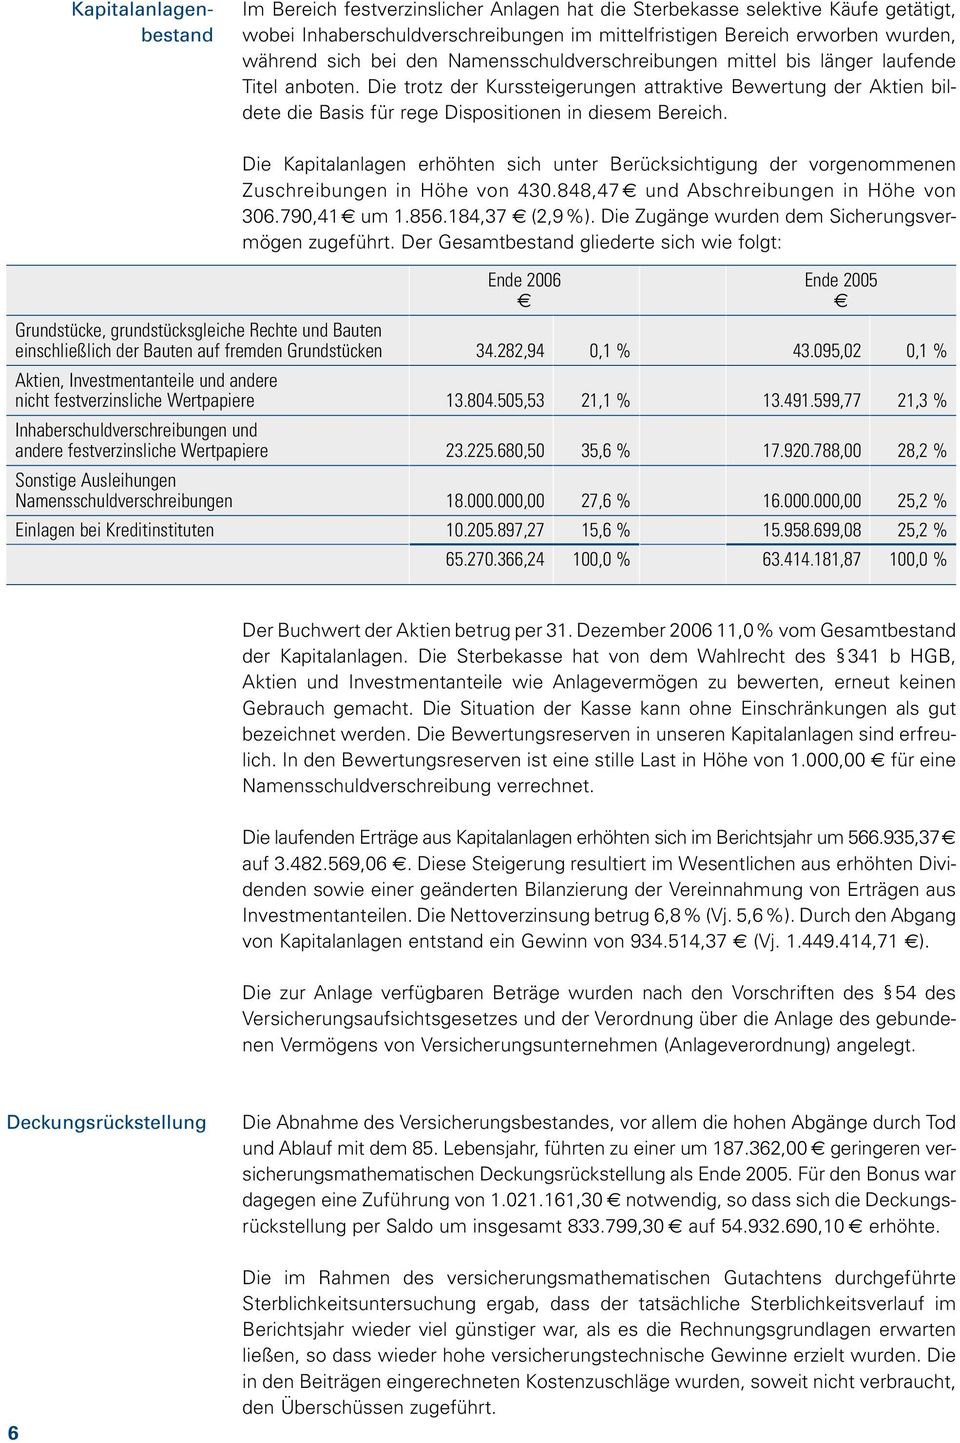 Di Kapitalanlagn rhöhtn sich untr Brücksichtigung dr vorgnommnn Zuschribungn in Höh von 430.848,47 und Abschribungn in Höh von 306.790,41 um 1.856.184,37 (2,9%).